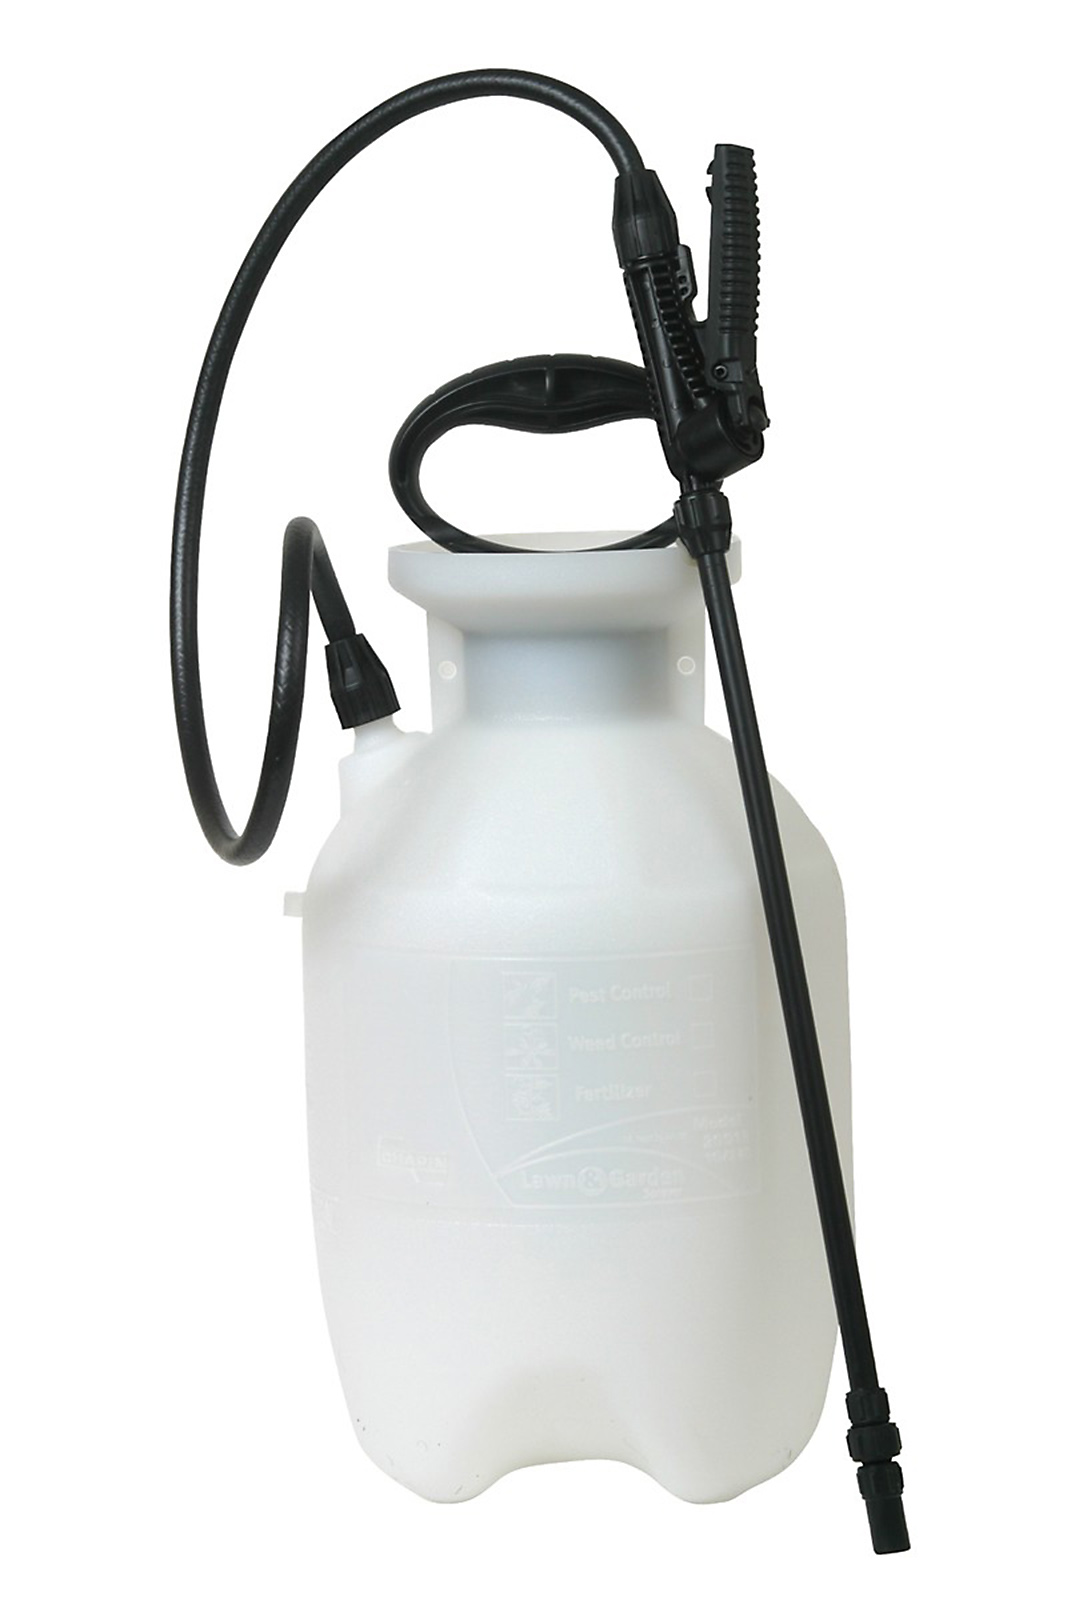 Chapin 20000 1 Gallon Lawn & Garden Sprayer